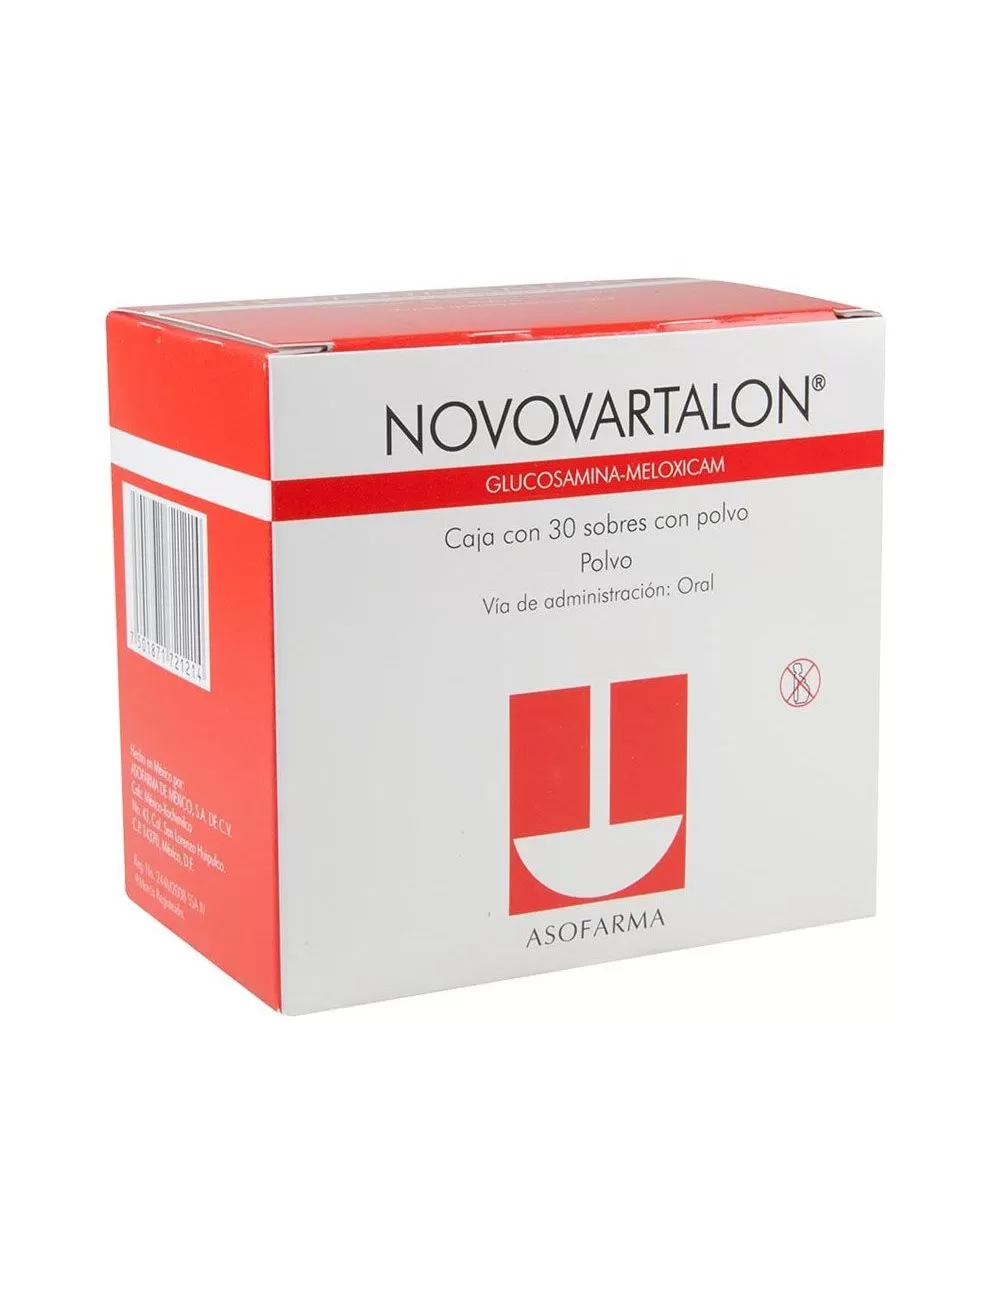 Novovartalon 1500 mg / 15 mg Caja Con 30 Sobres